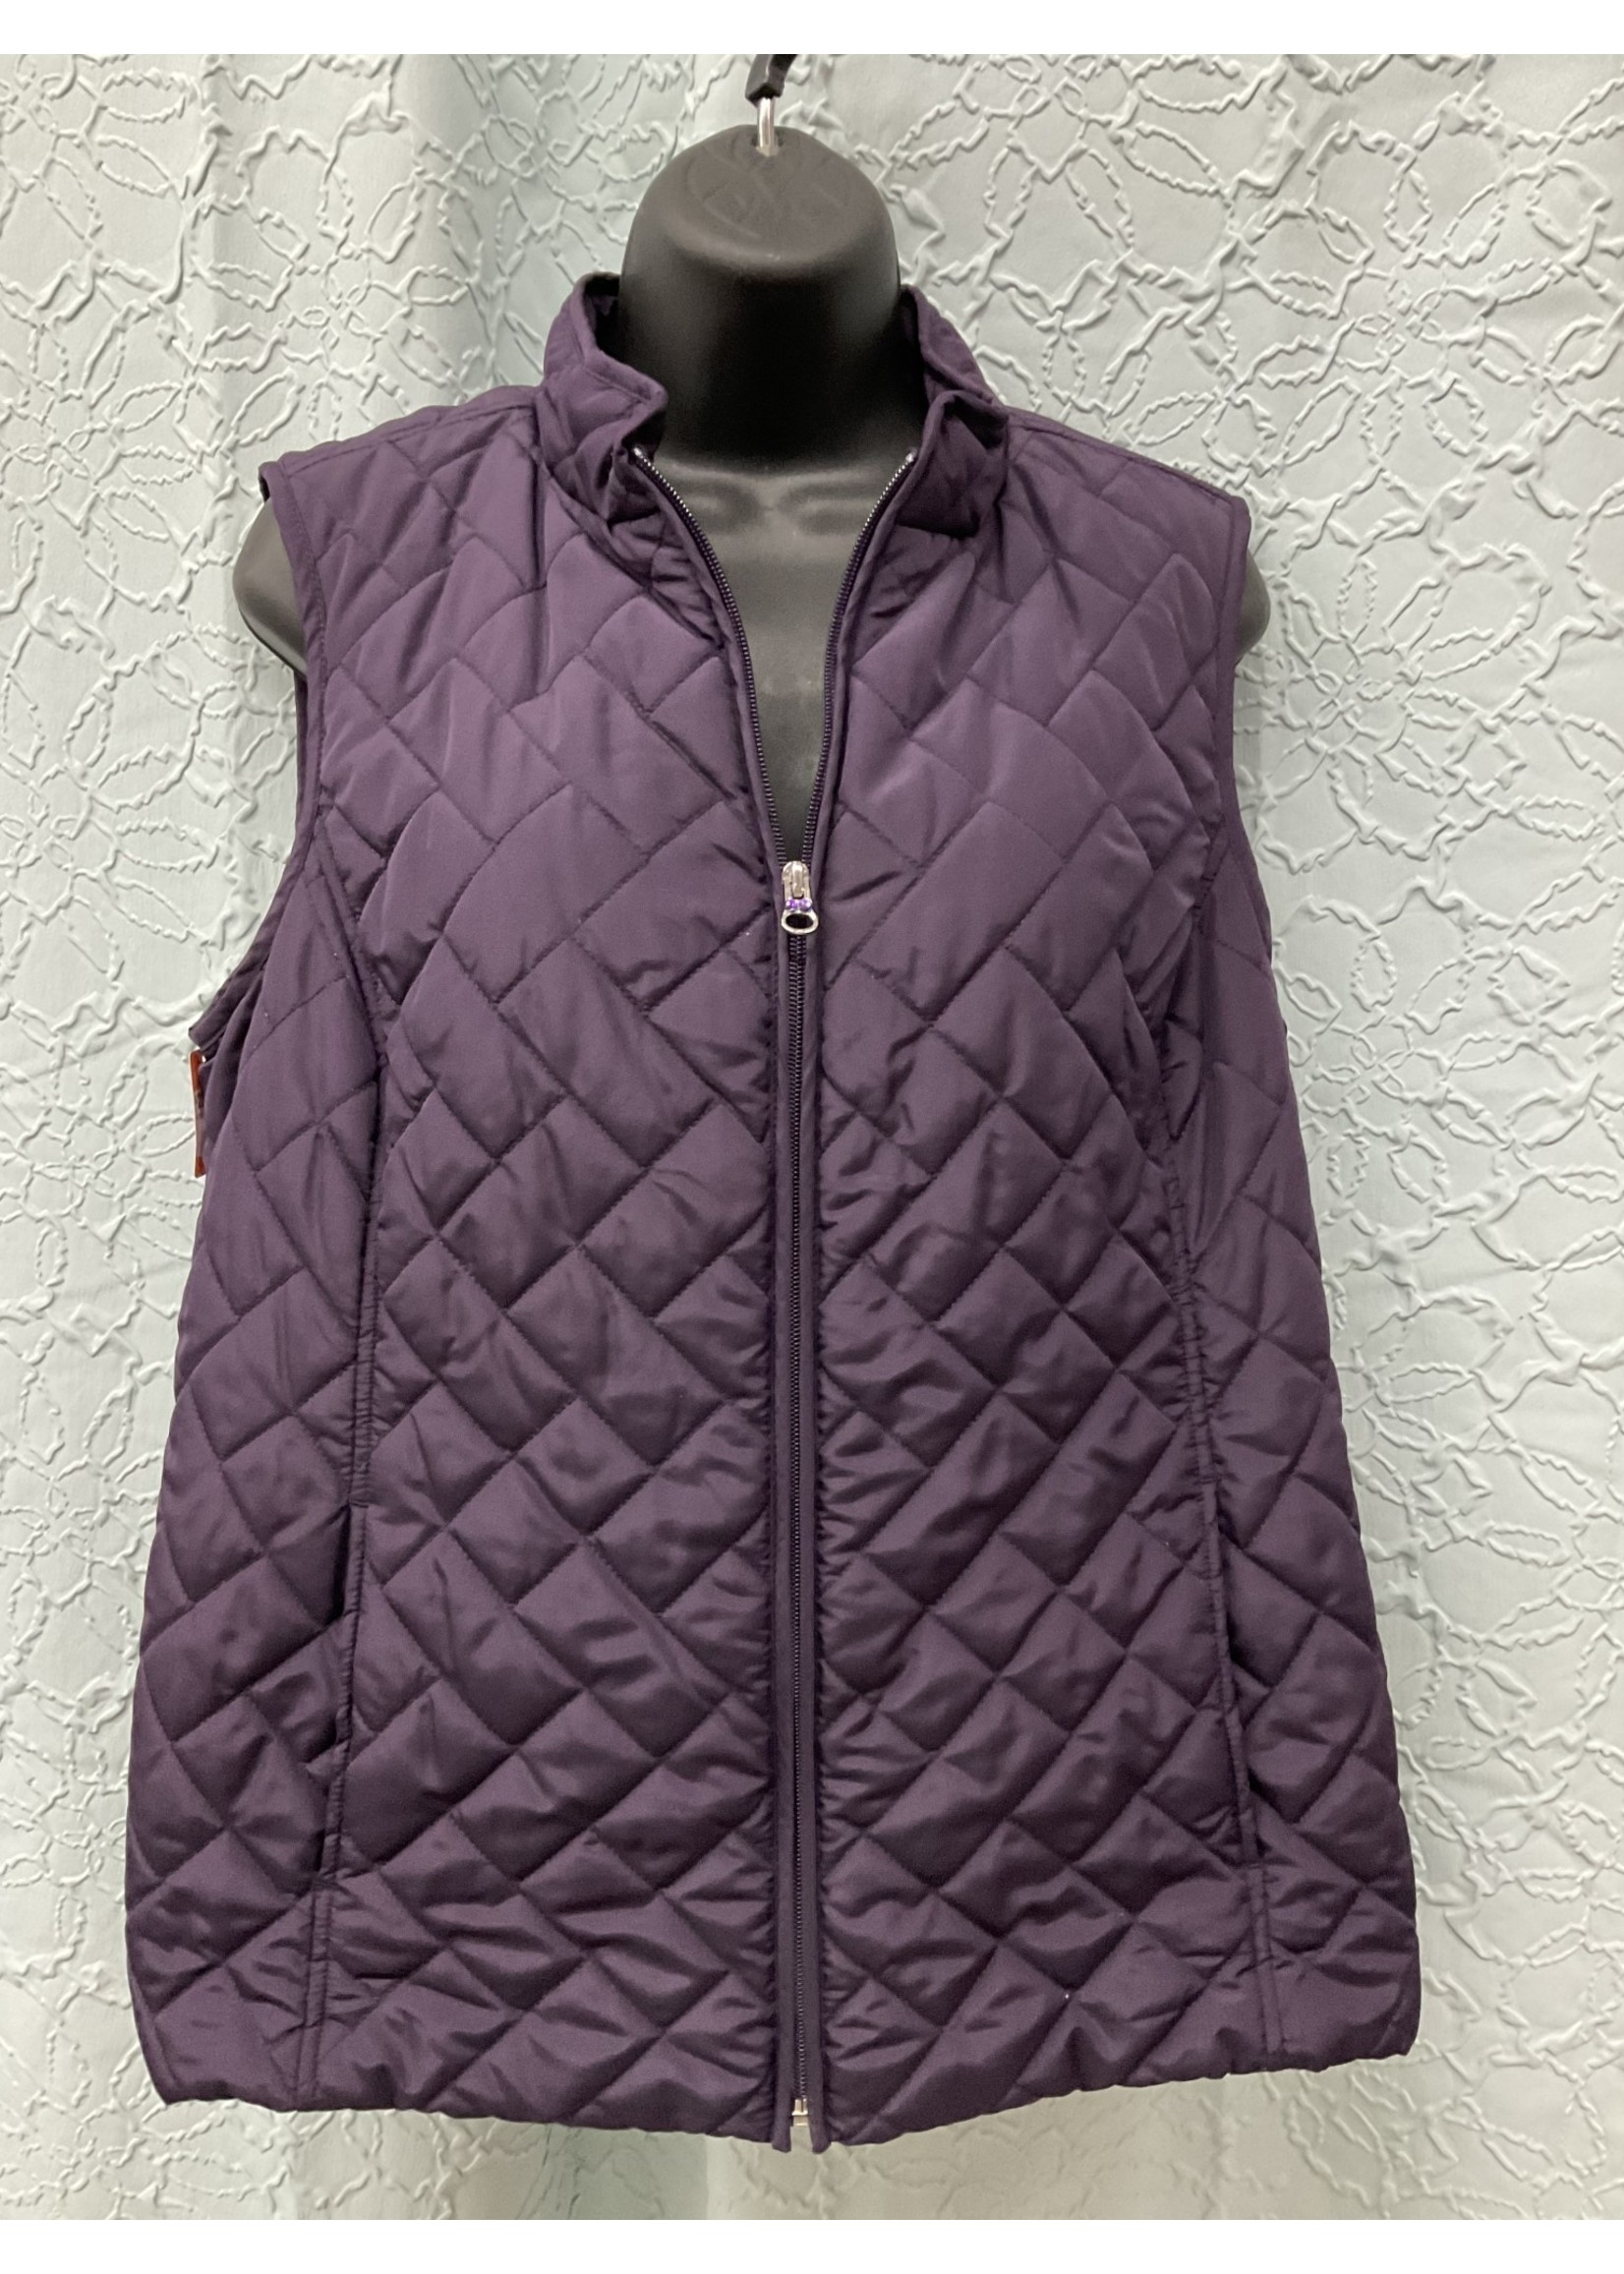 A123-1 Purple Vest